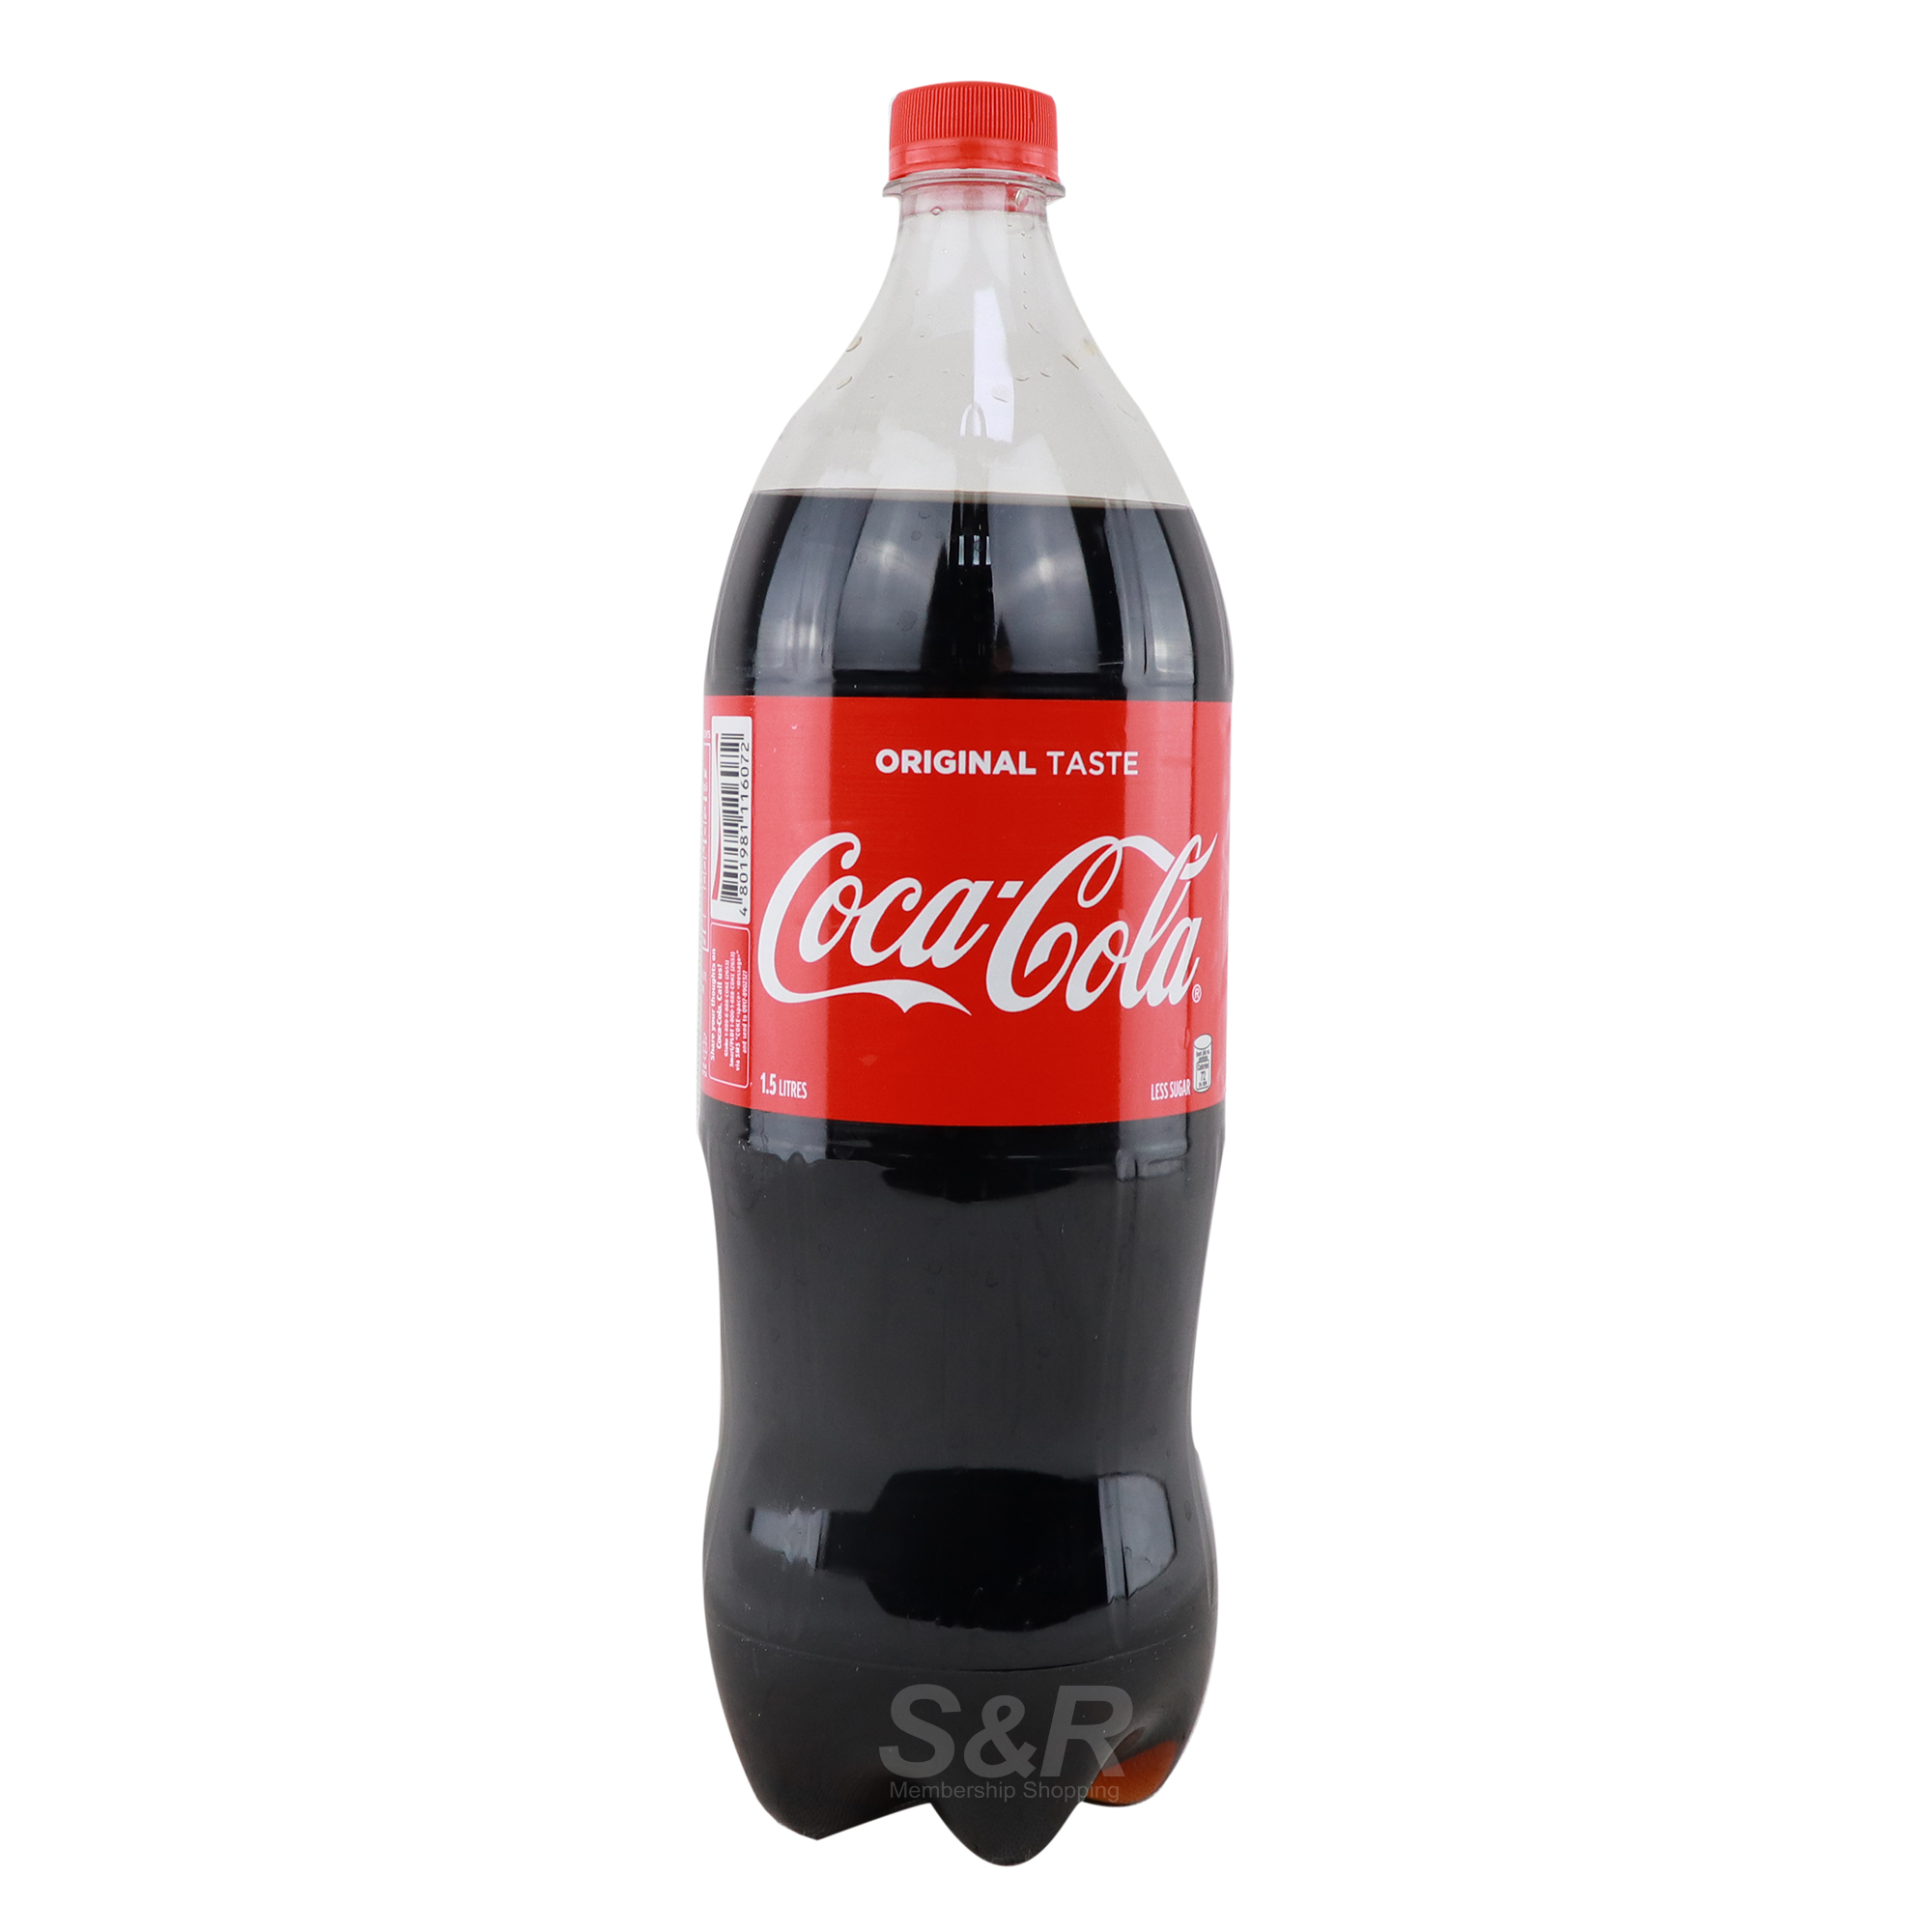 Coca-cola Original Taste 1.5L